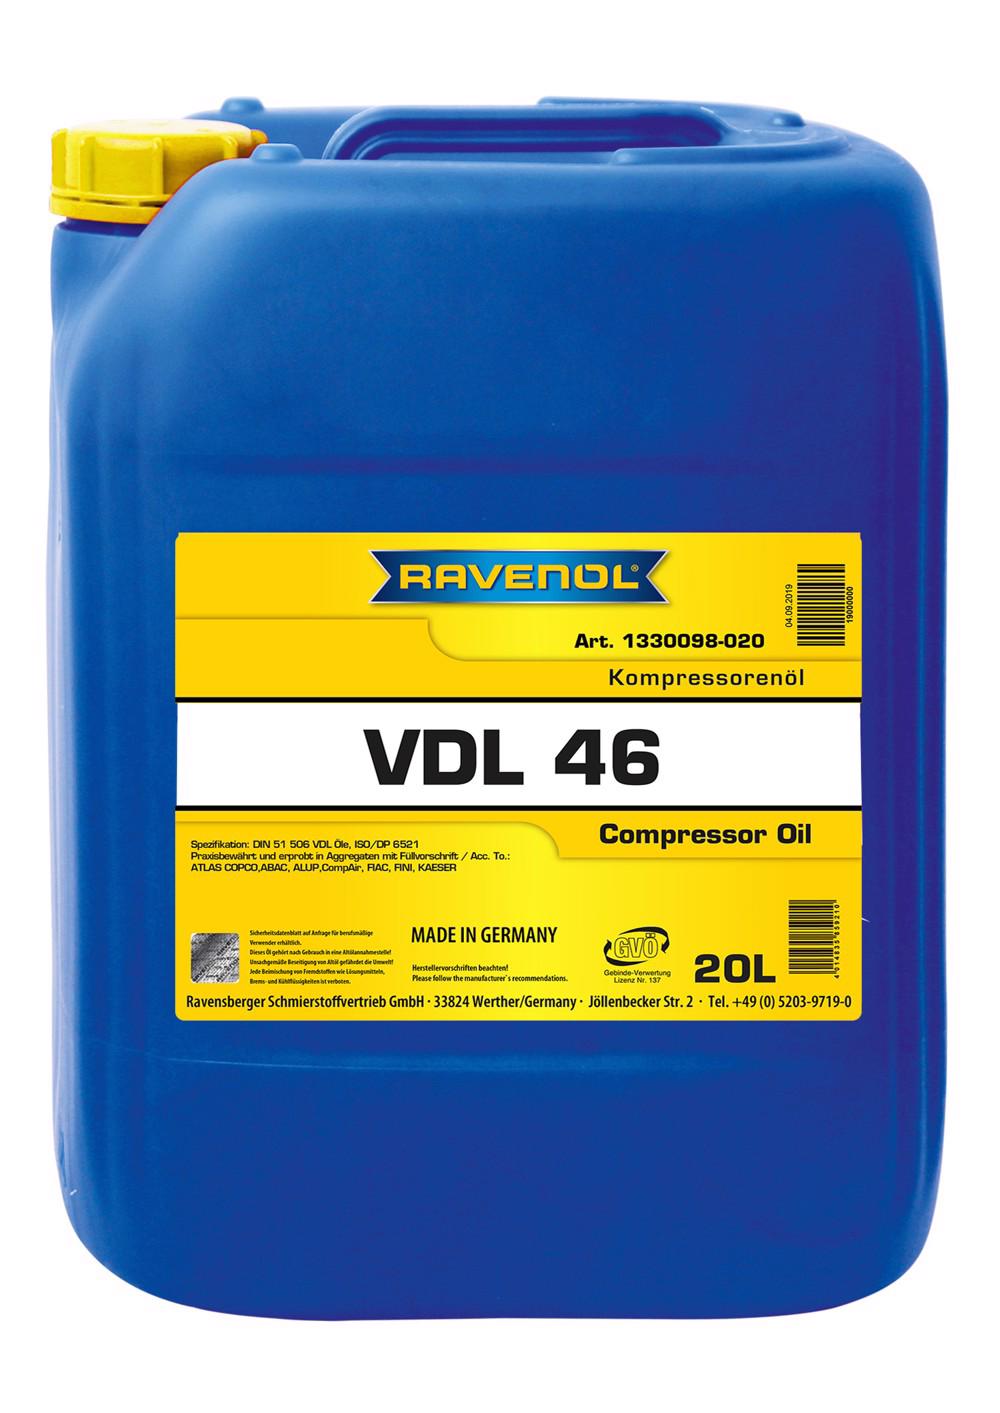 RAVENOL Kompressorenoel VDL 46  20 L